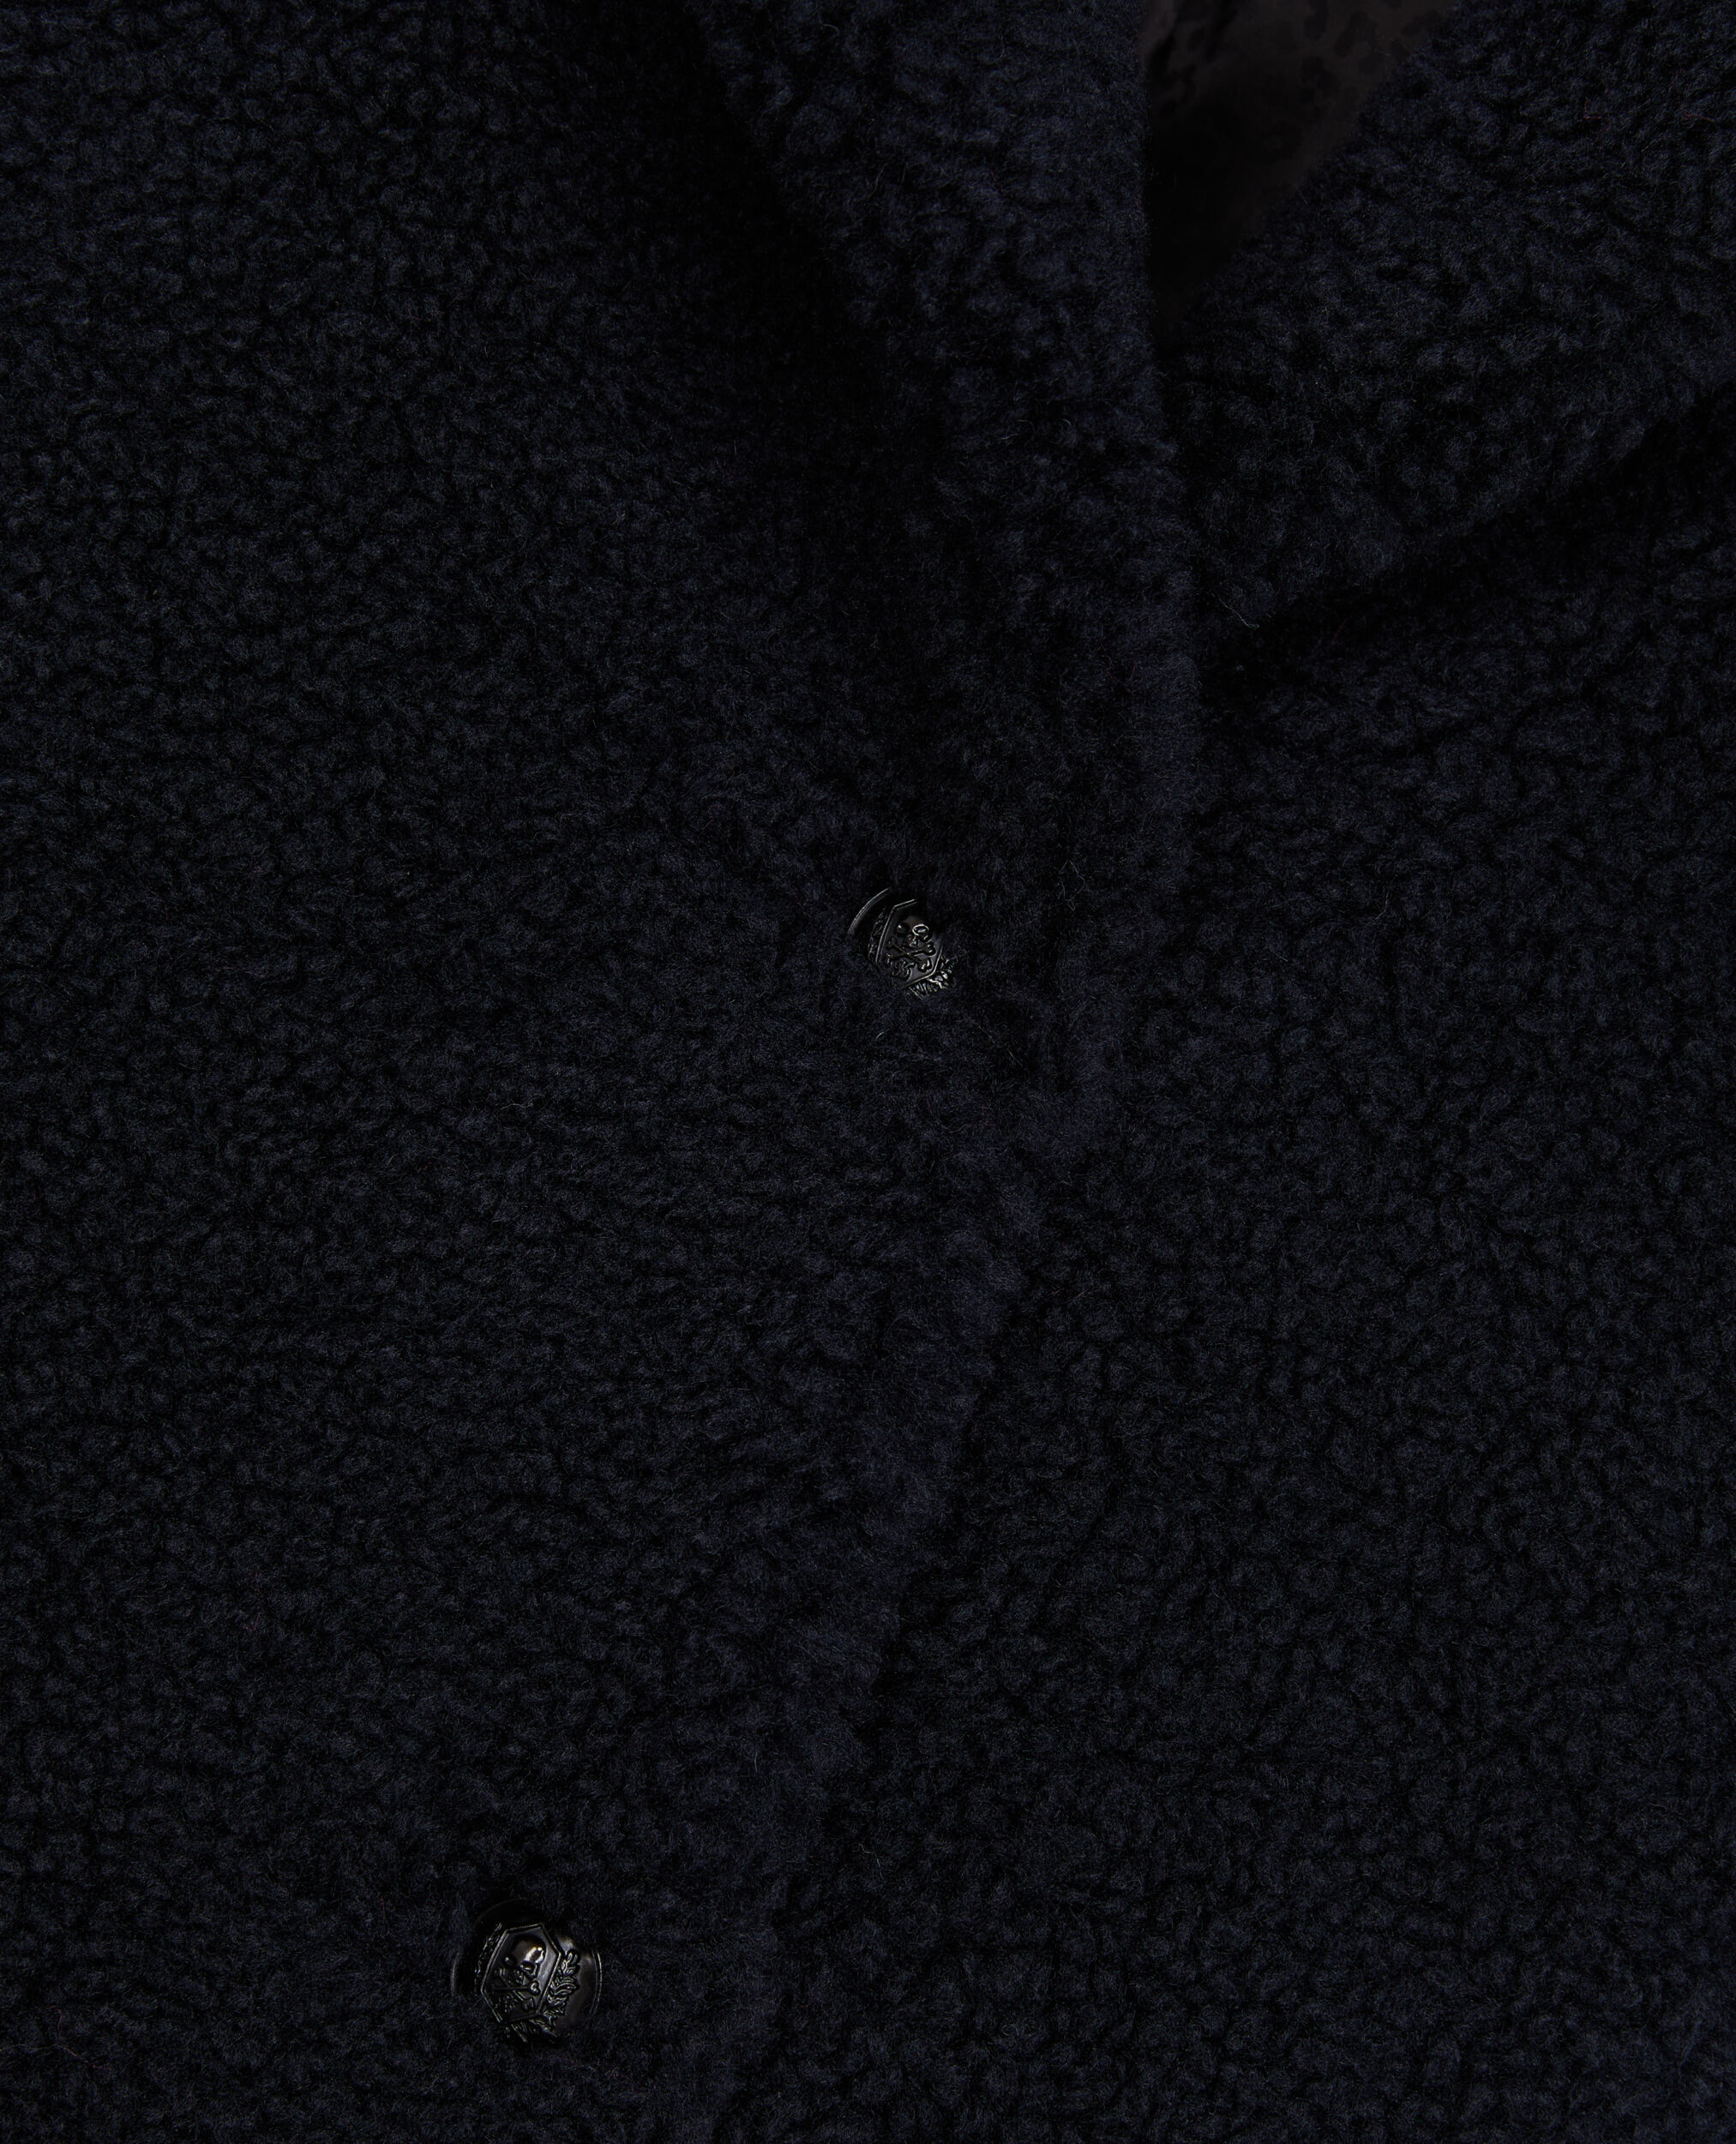 Manteau bleu marine court imitation laine de mouton, NAVY, hi-res image number null